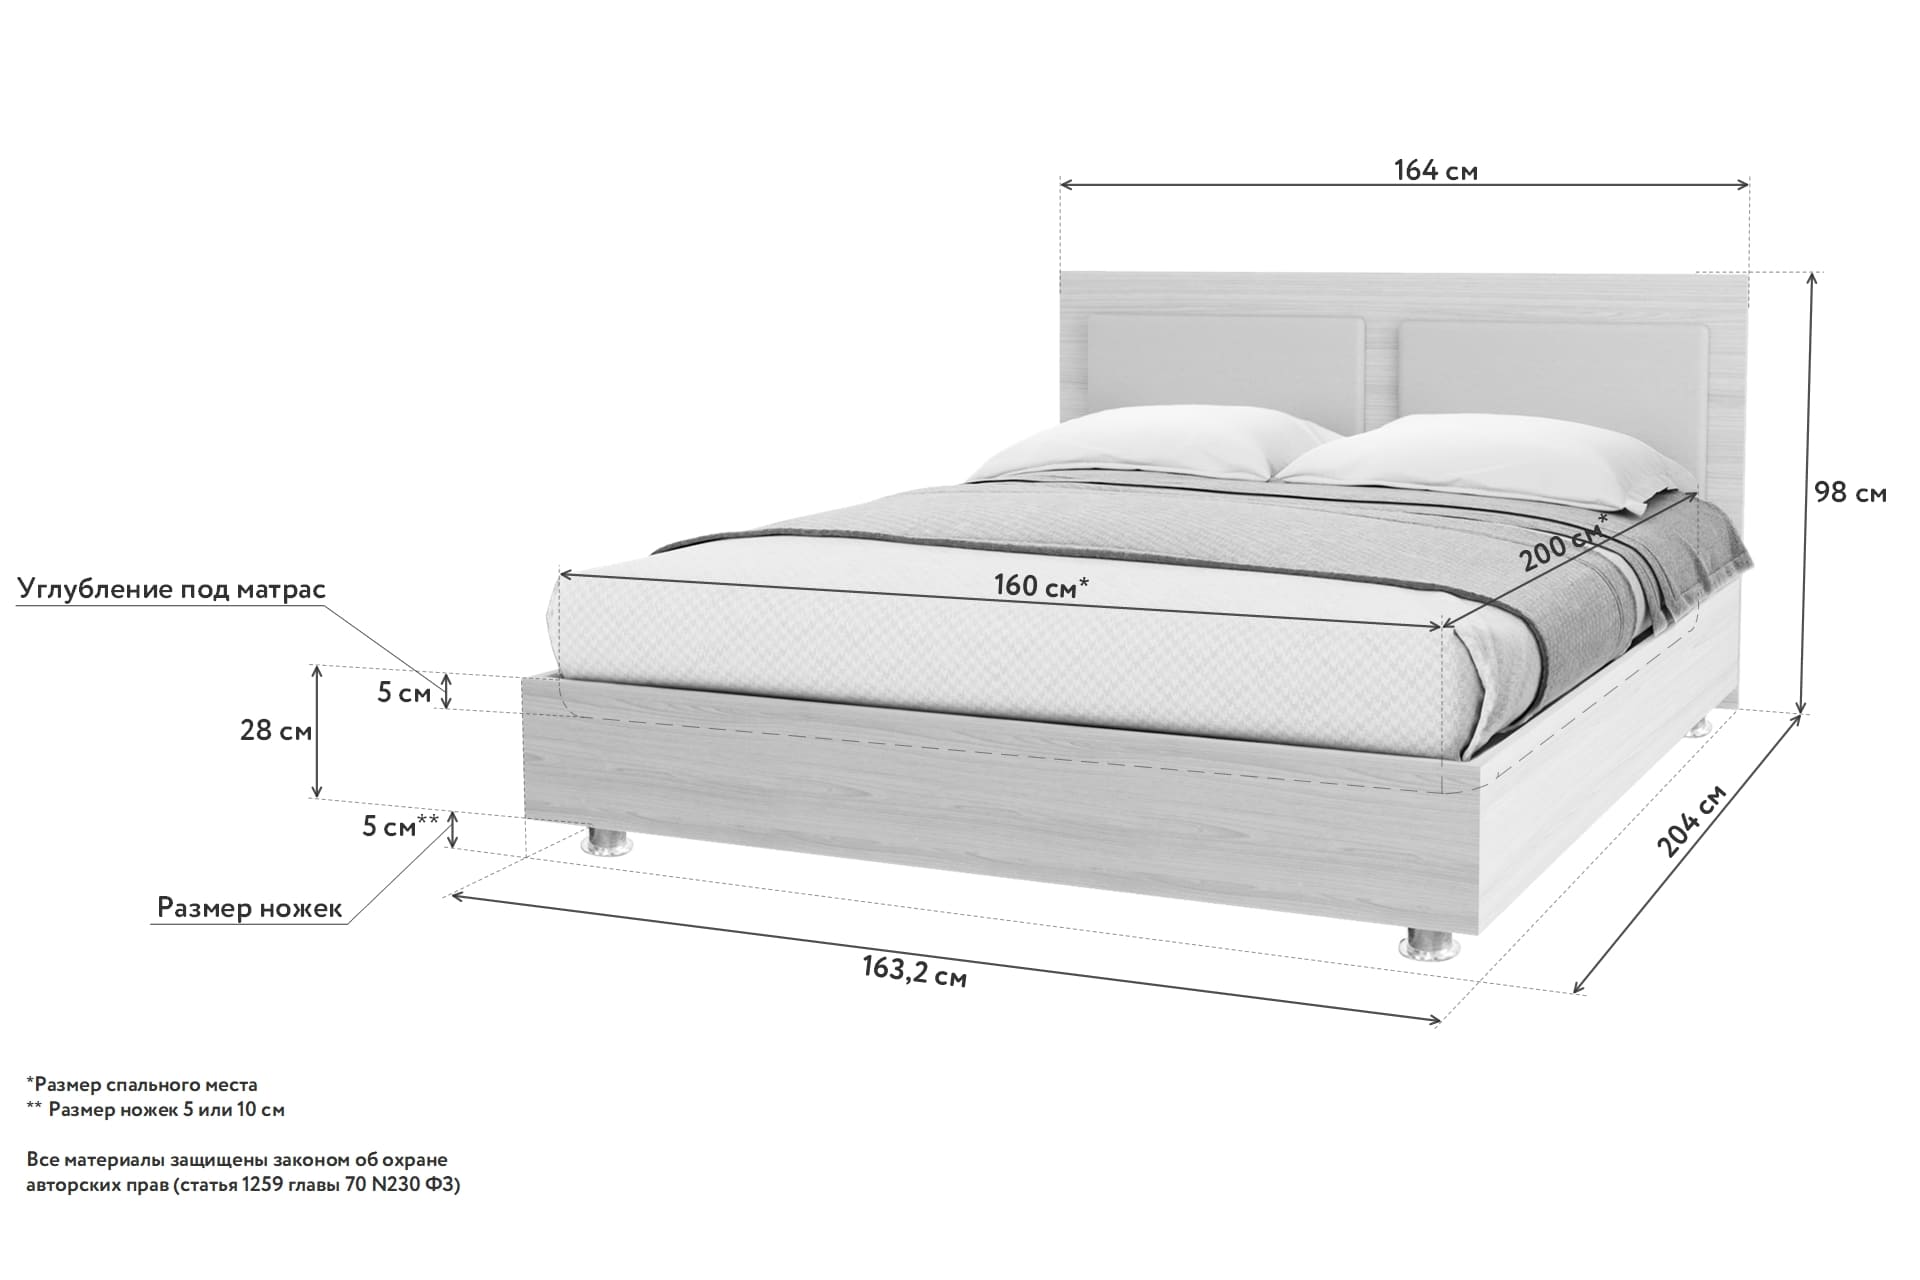 габариты двуспальной кровати стандарт